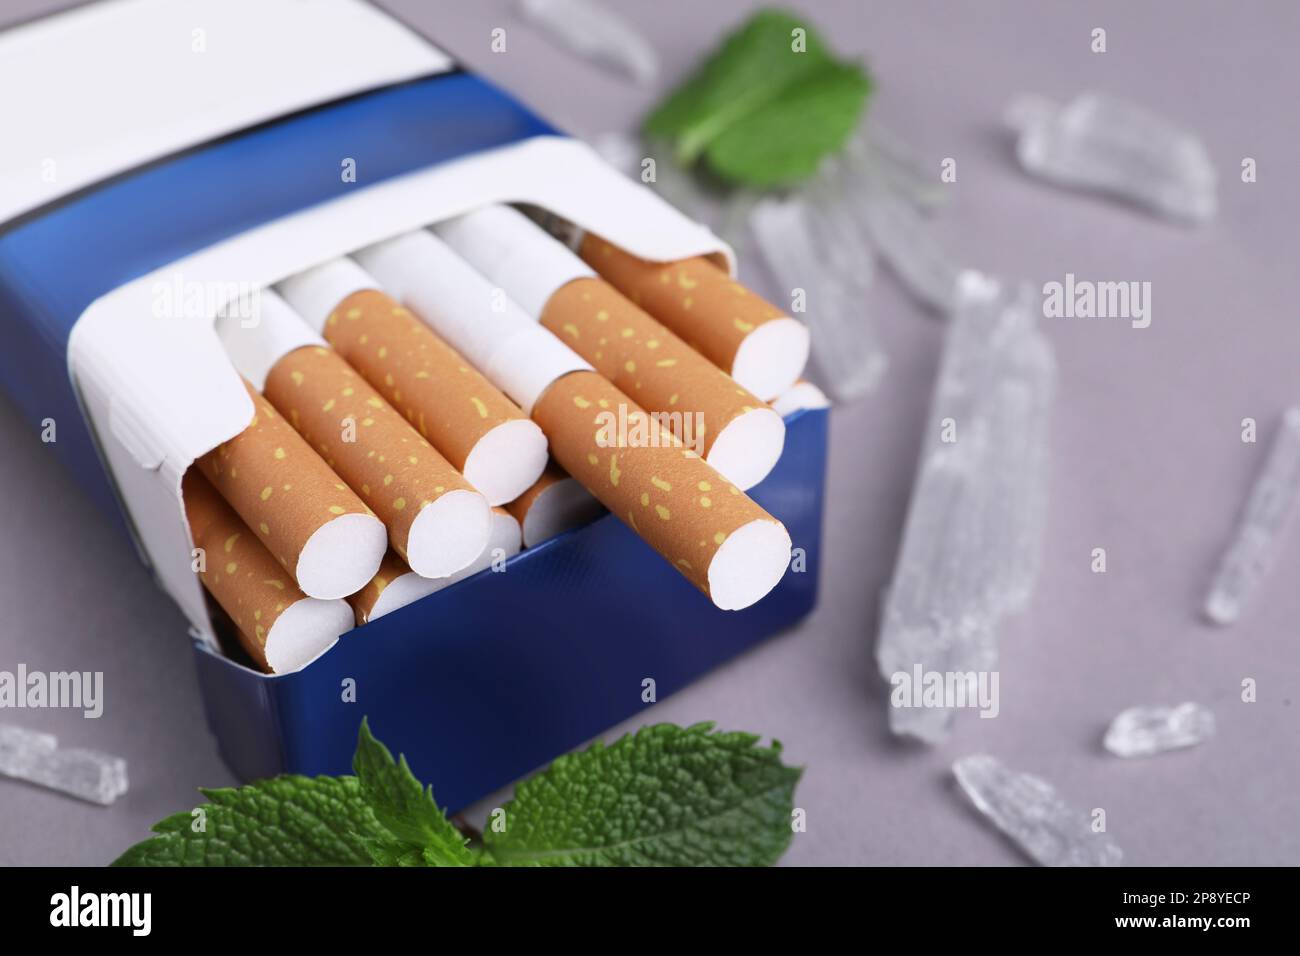 Paquet de cigarettes, de cristaux de menthol et de feuilles de menthe sur fond gris, gros plan Banque D'Images